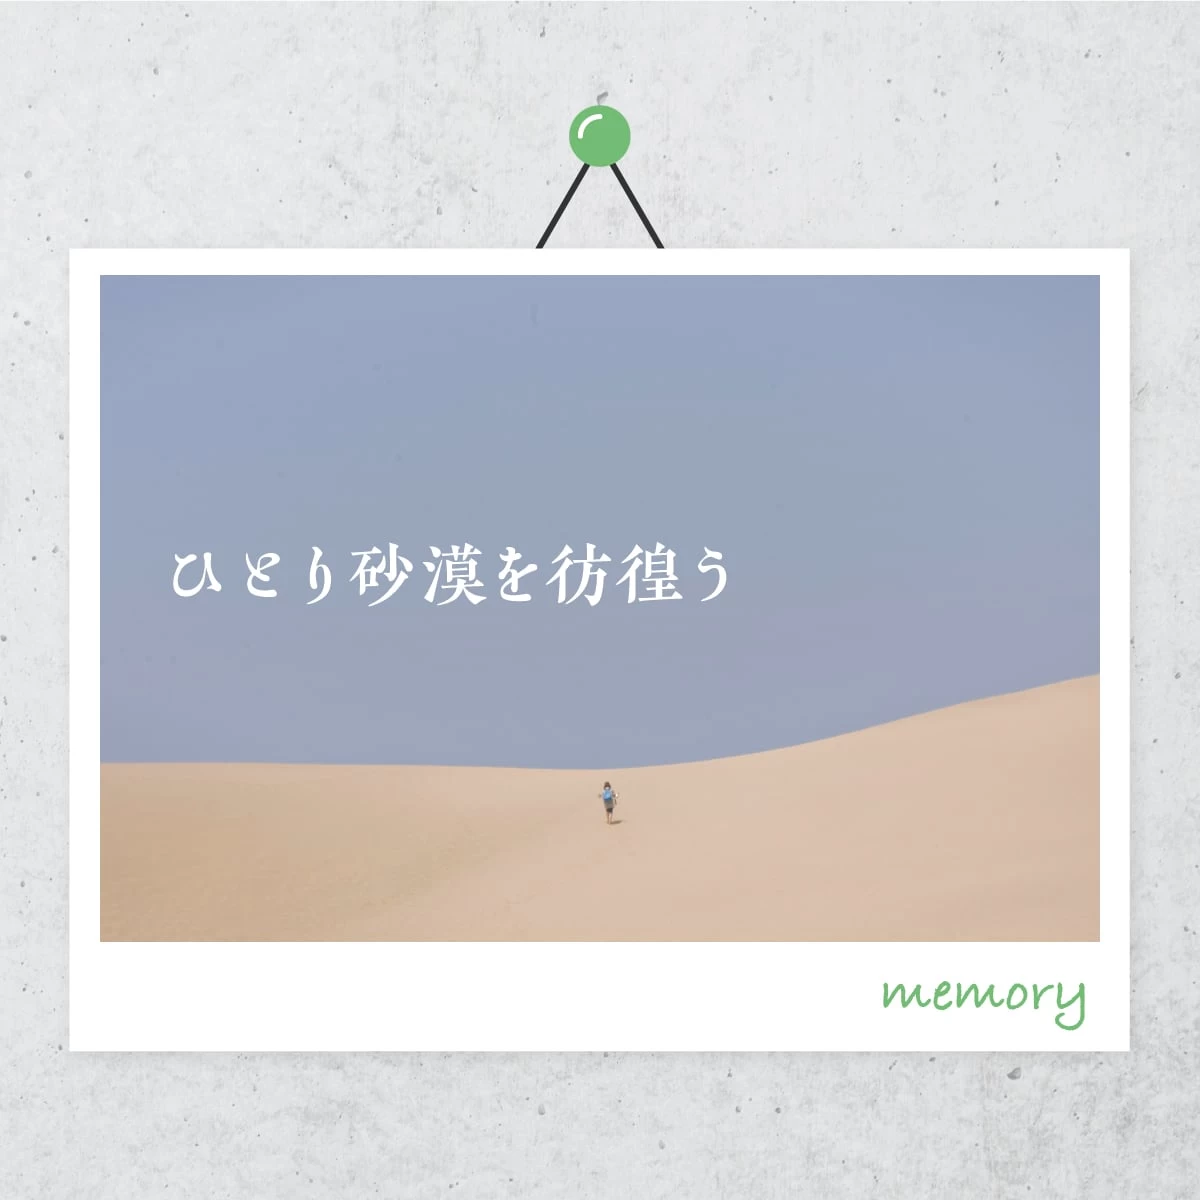 鳥取砂丘を巡る1泊2日の観光モデルコース。温泉も楽しむ一人旅